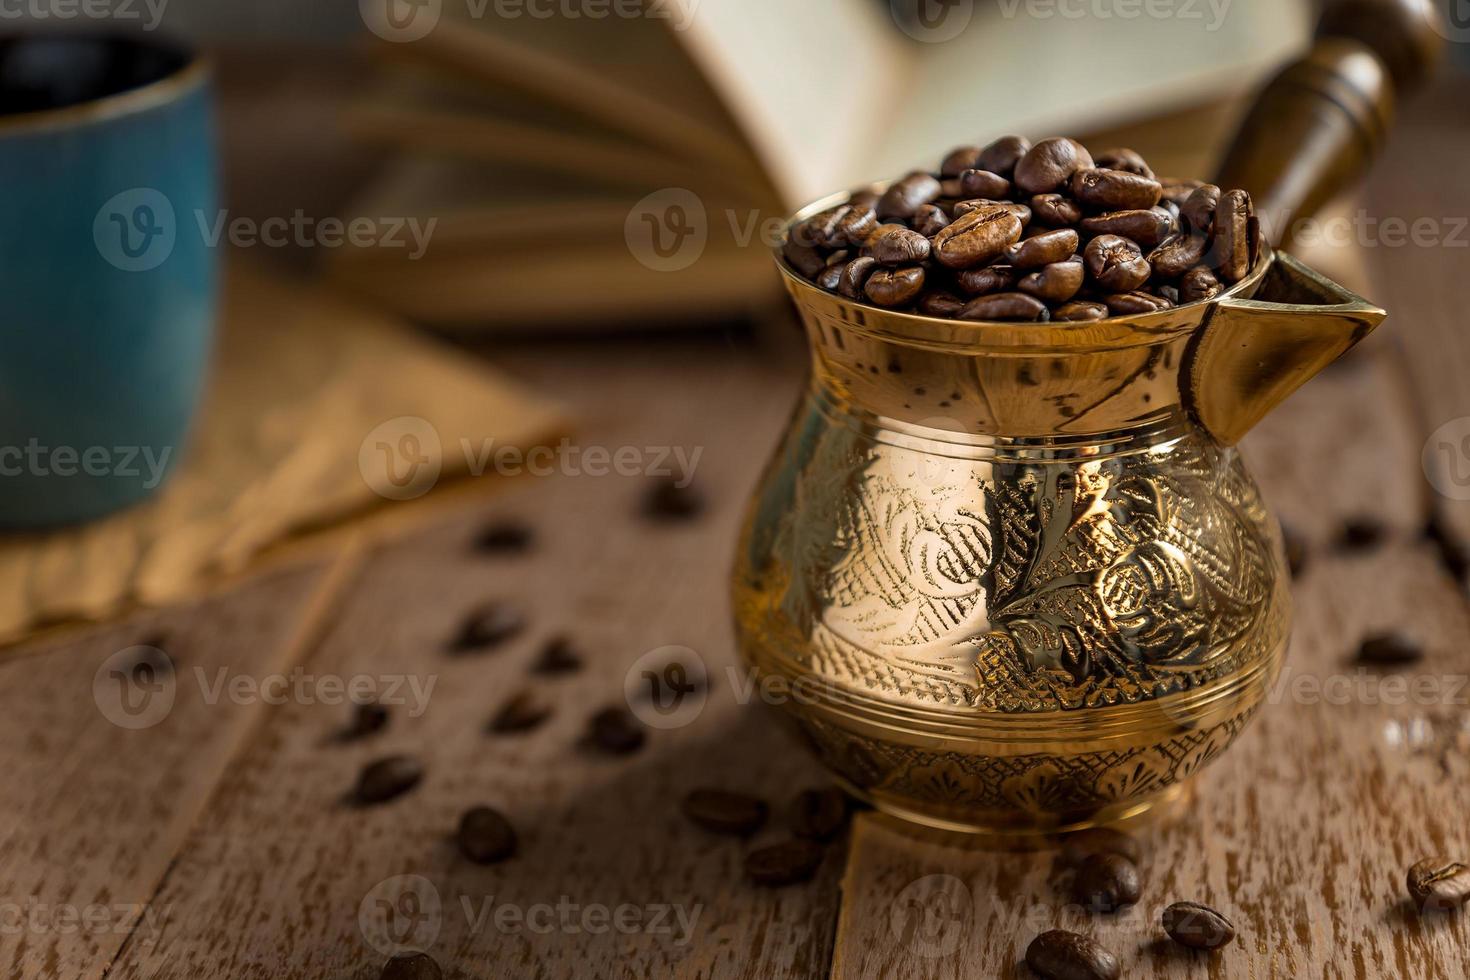 vers geroosterde koffiebonen in cezve traditionele Turkse koffiepot geopend boek en kopje op houten tafel. foto